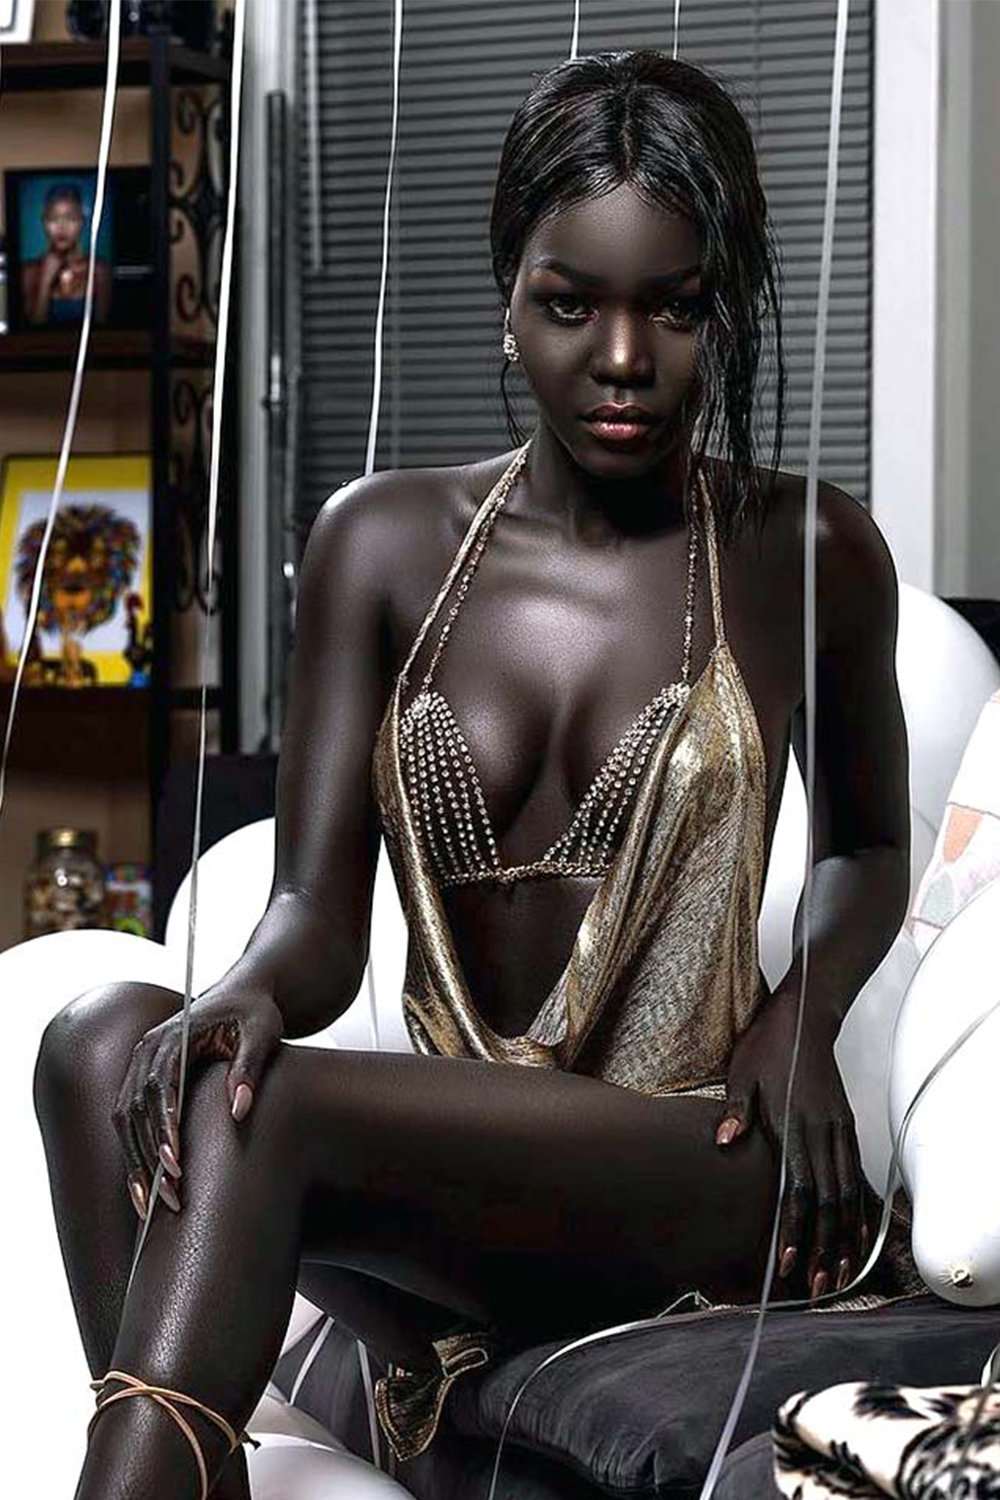 Негритянки би. Няким Гатвеч. Нуаким Гатвеч модель из Южного Судана. Королева тьмы модель из Южного Судана Ньяким. Nyakim Gatwech (Ньяким Гатвеч) - 24-летняя модель.